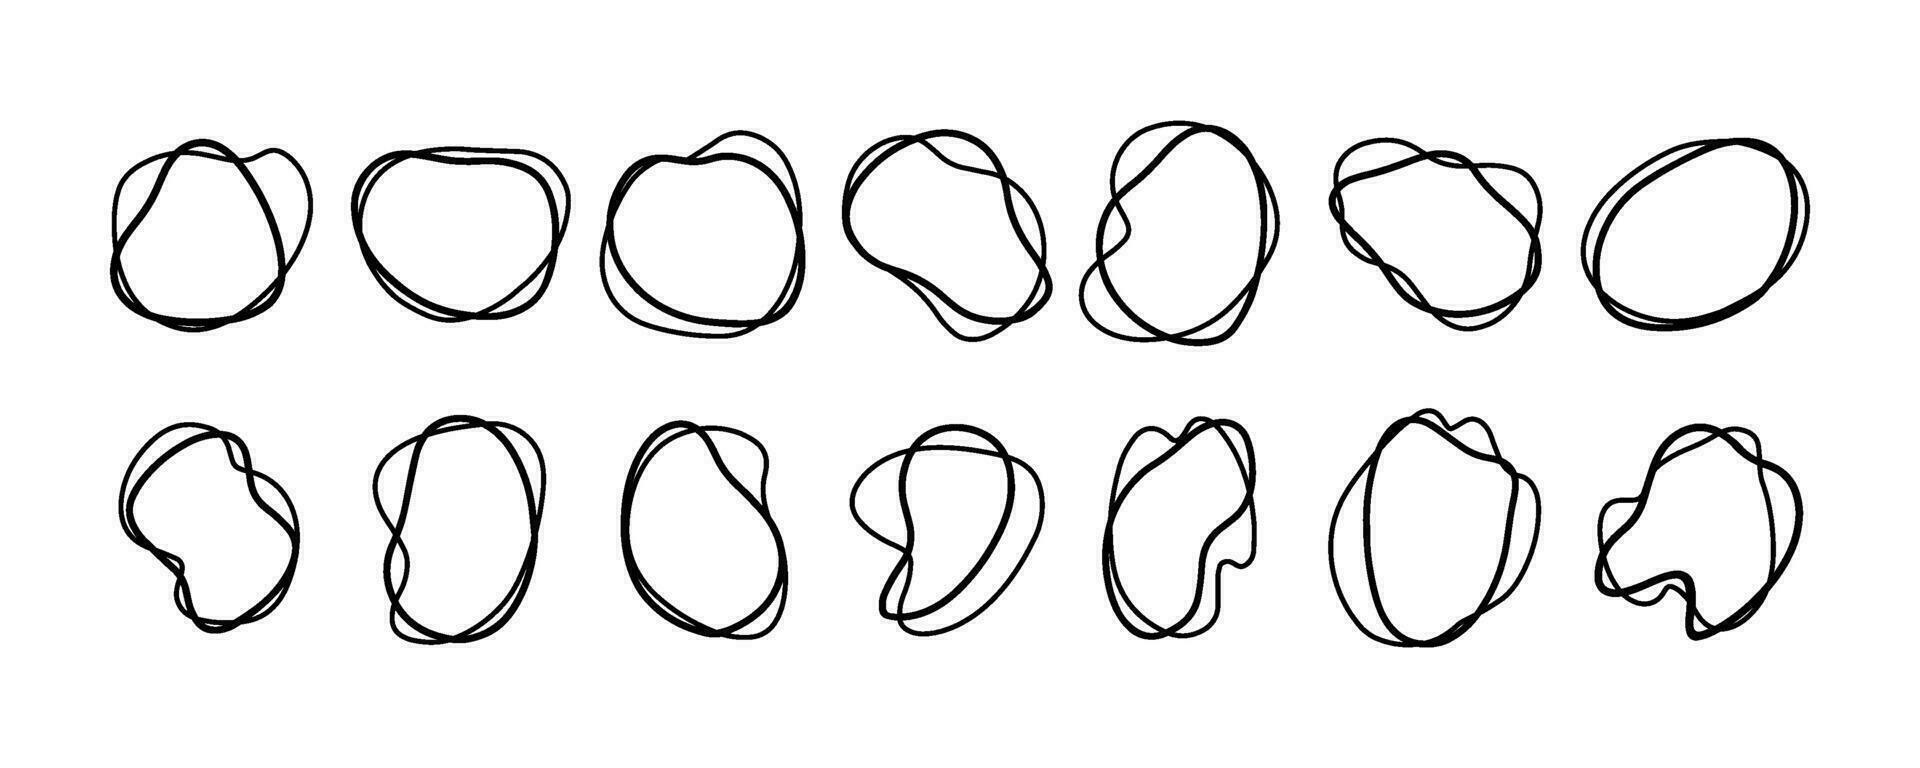 disegnato a mano schema il giro astratto biologico macchie di irregolare forma. liquido forme per decorazioni. vettore illustrazione.